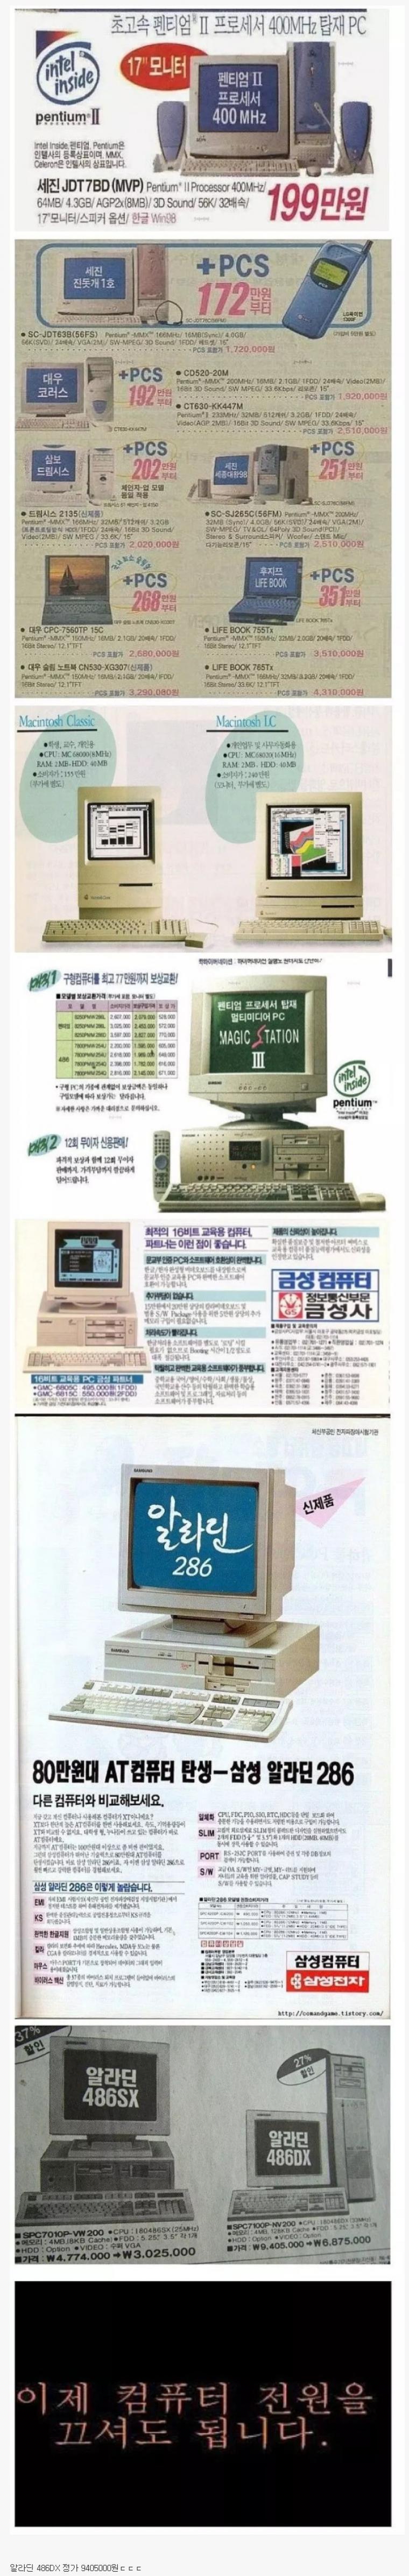 韓国の90年代のコンピュータ価格